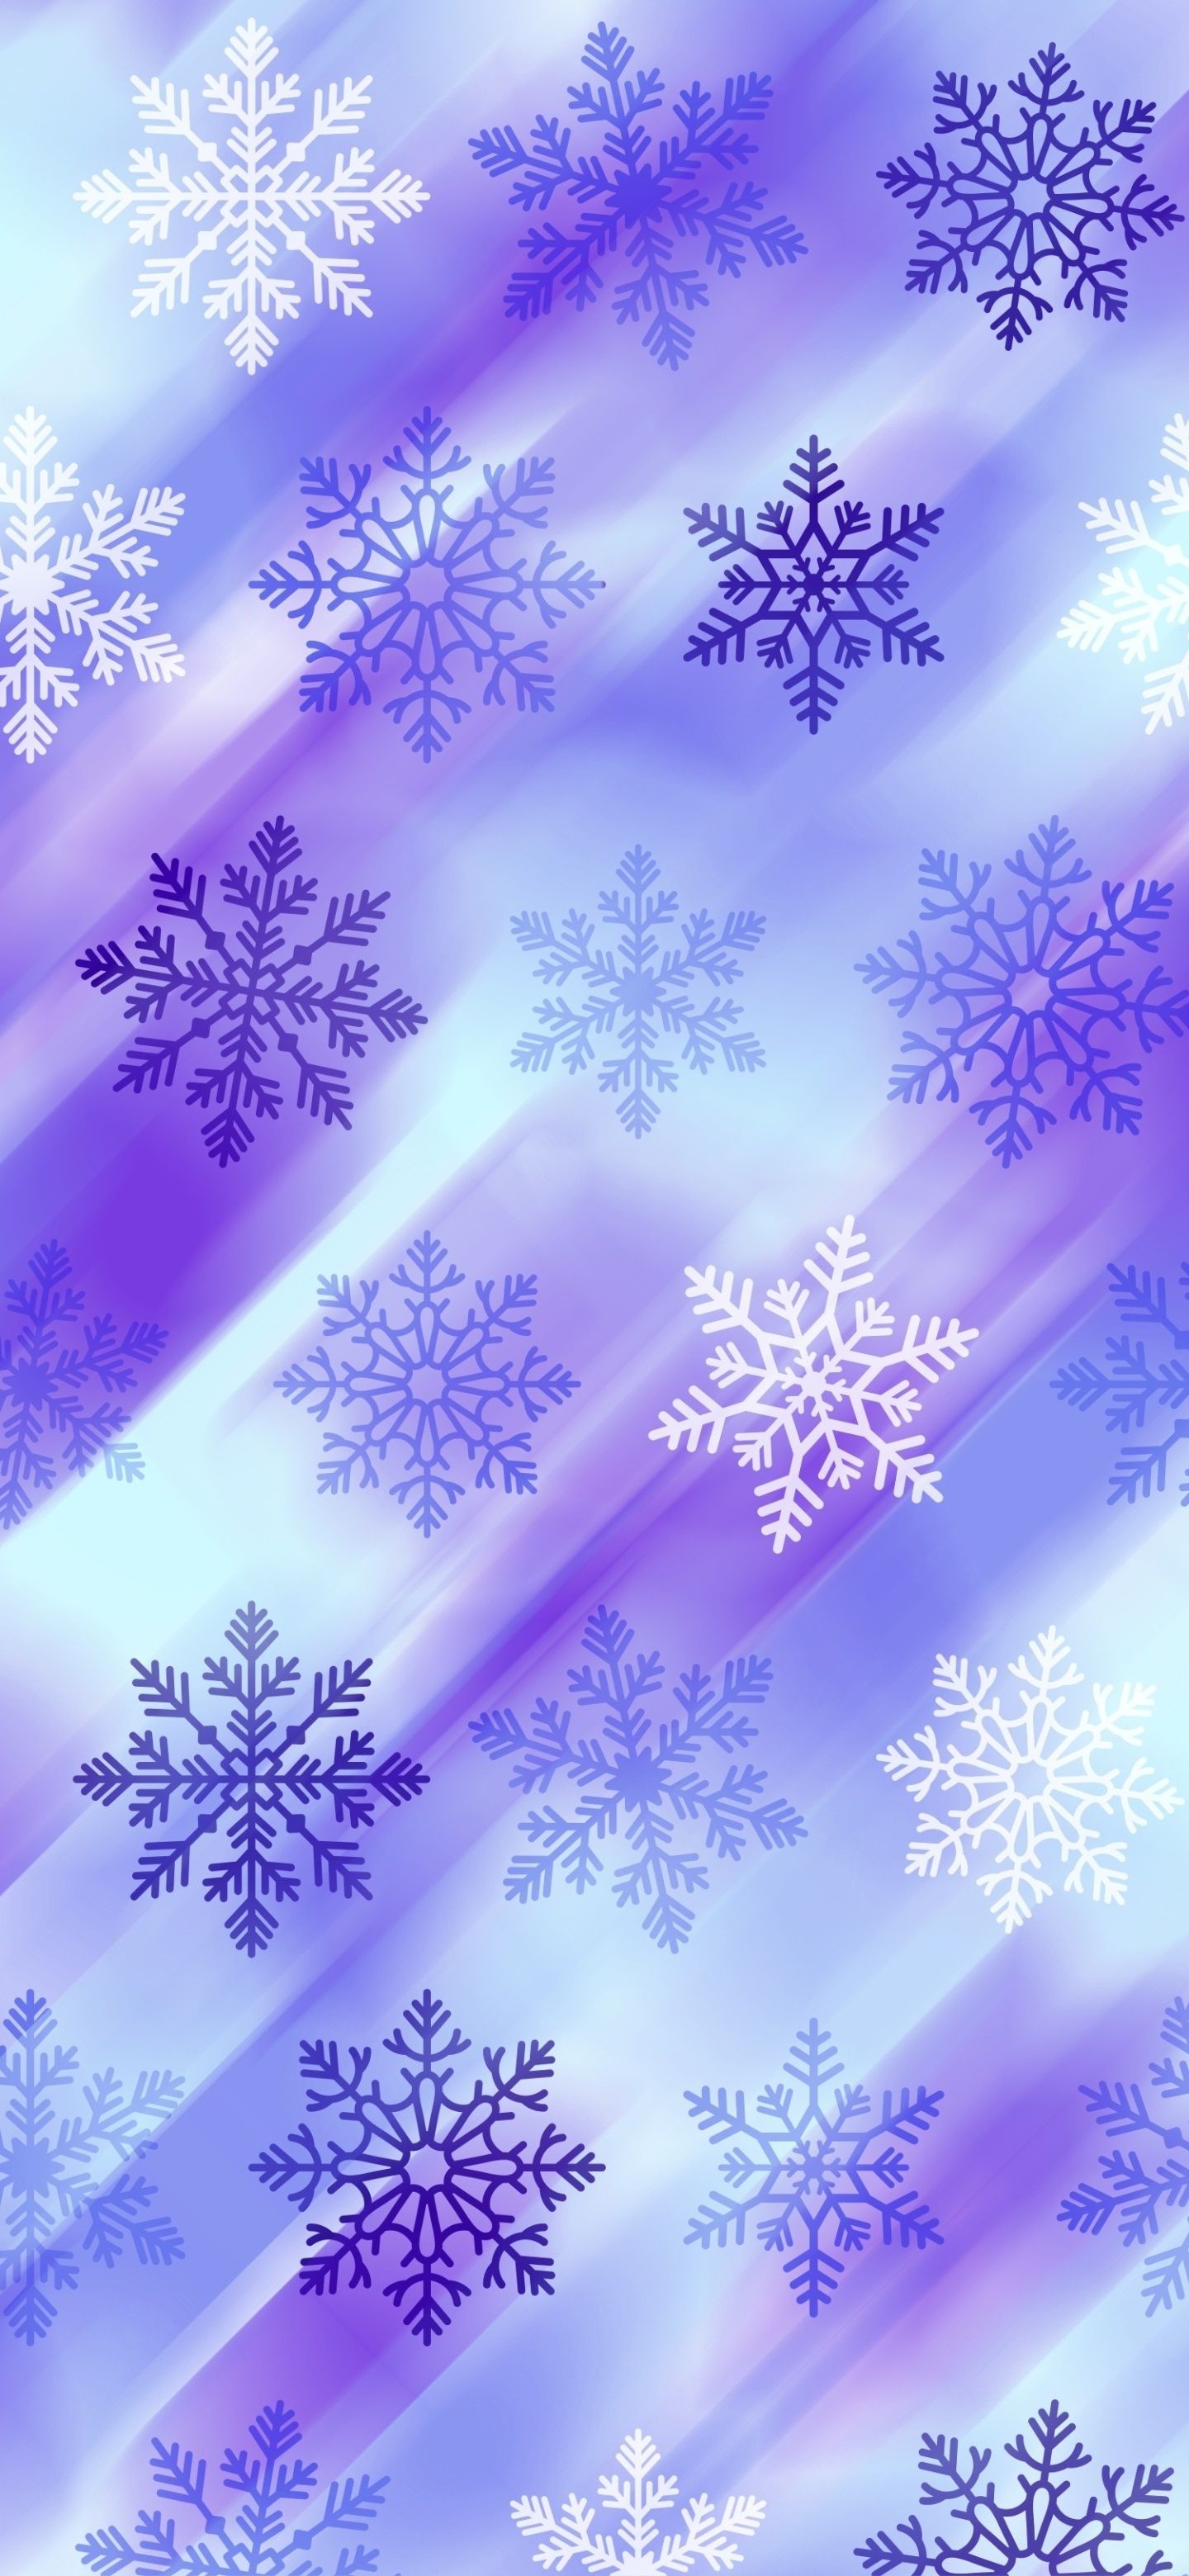 Full HD 1080p Snowflake phone wallpaper wallpaper free download